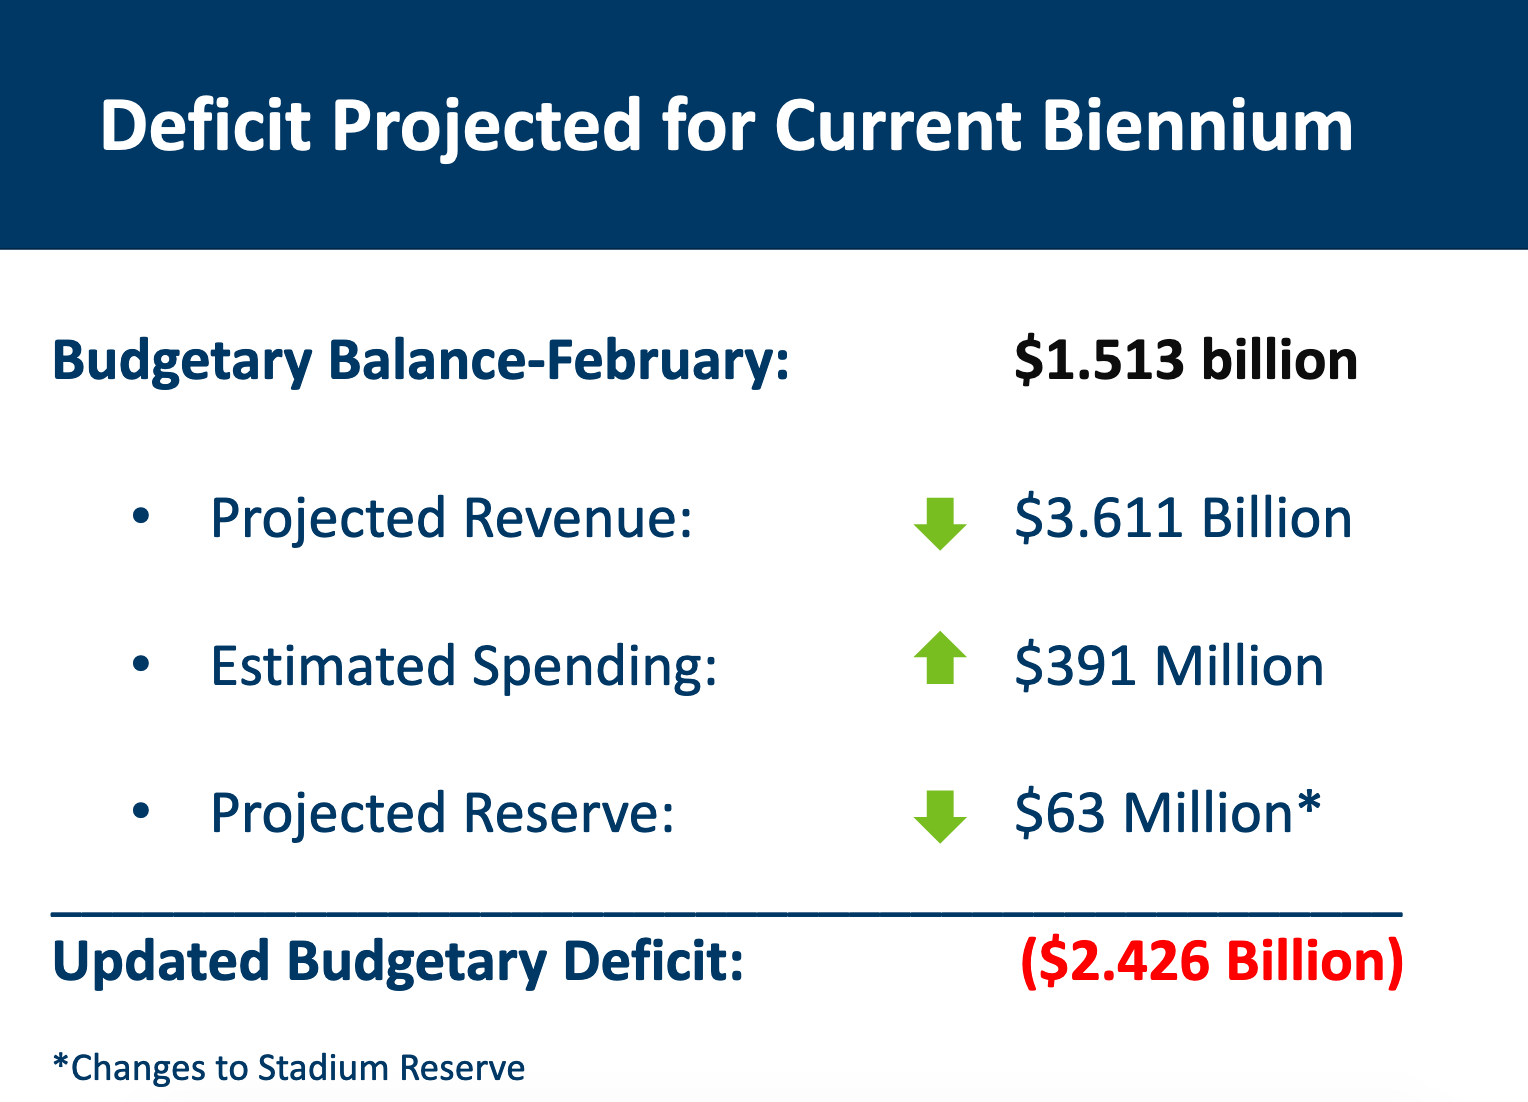 Deficit projections